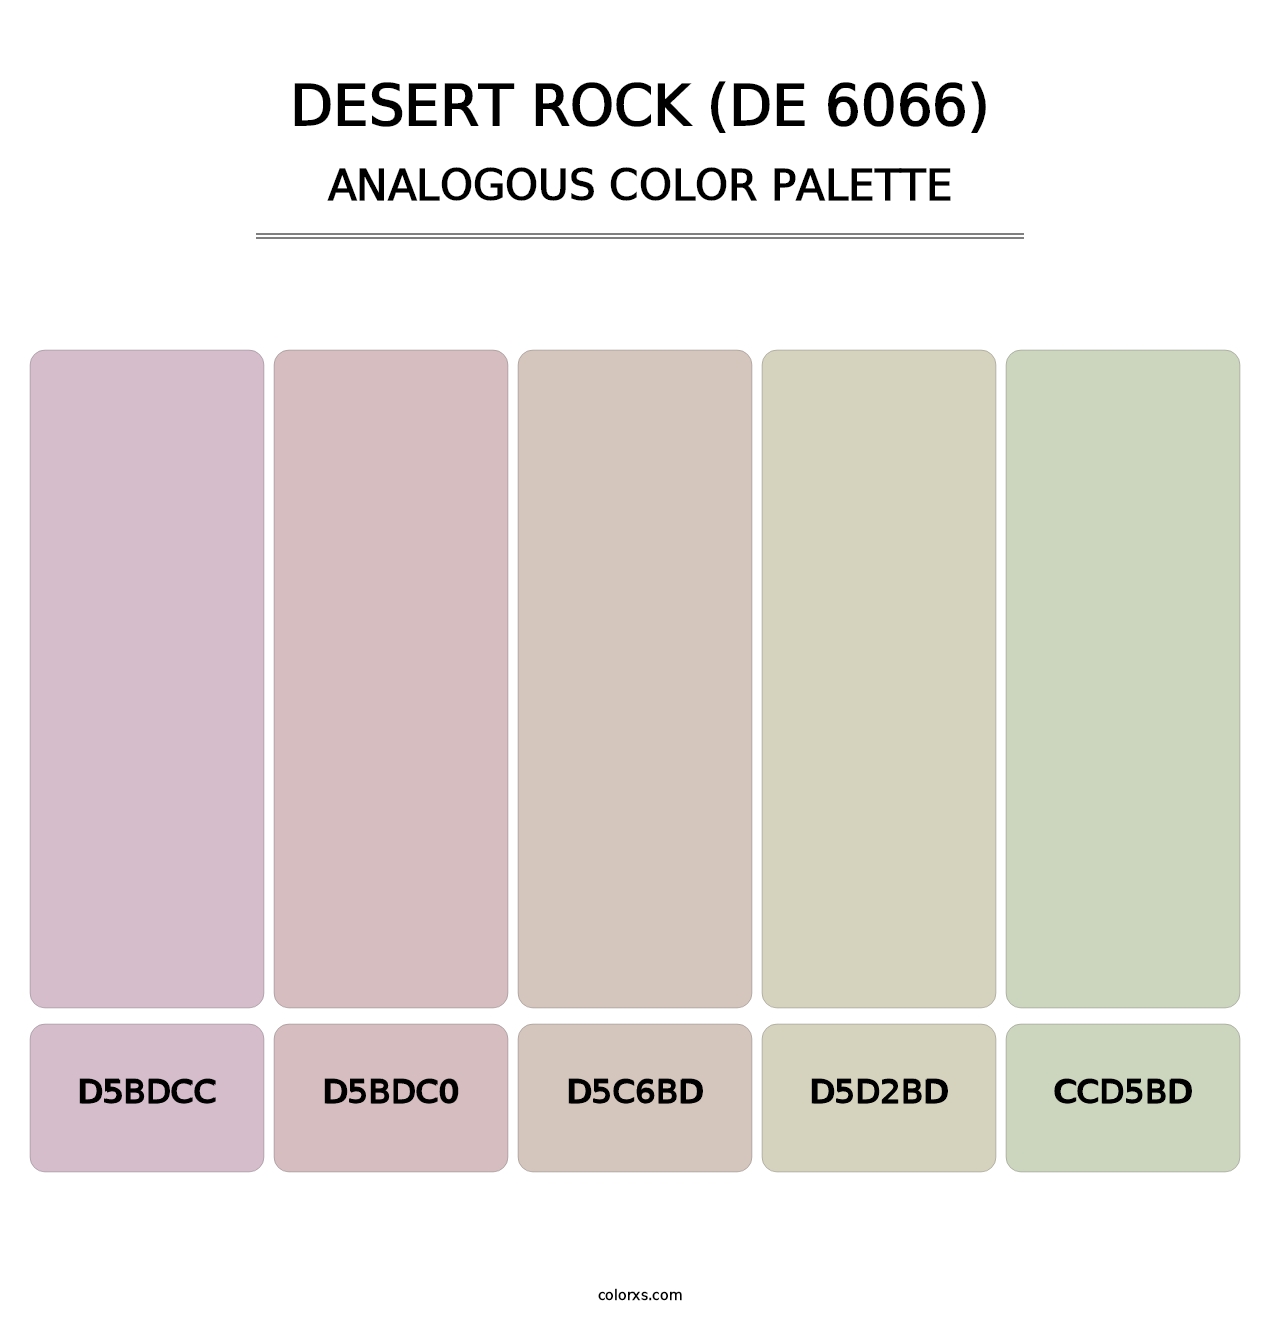 Desert Rock (DE 6066) - Analogous Color Palette